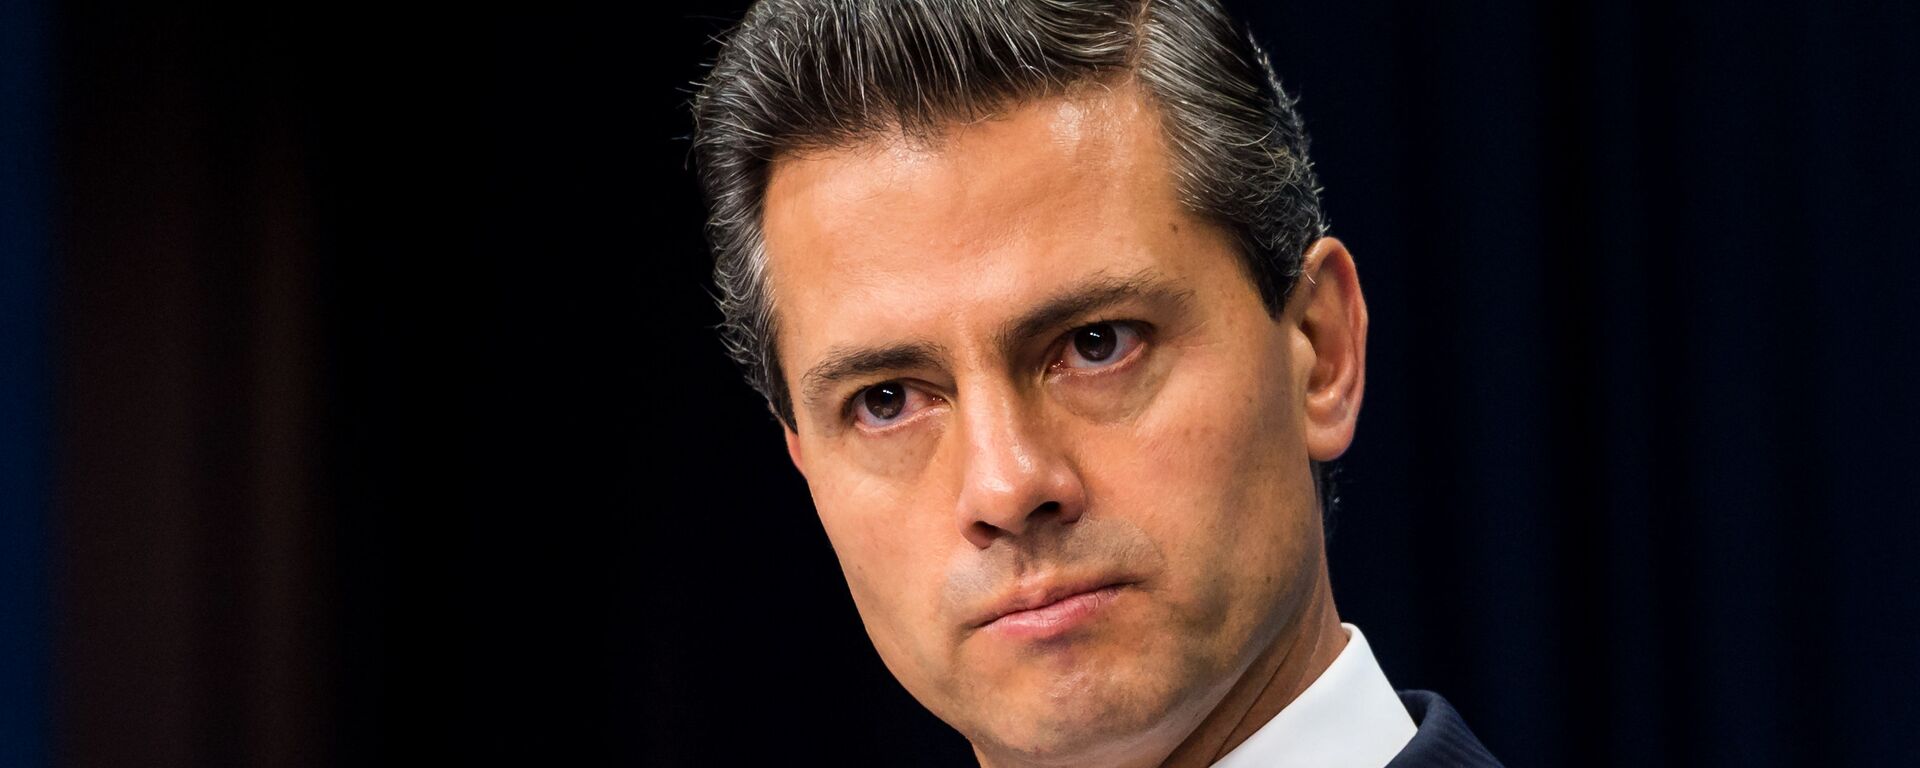 Enrique Peña Nieto, expresidente de México - Sputnik Mundo, 1920, 21.05.2021